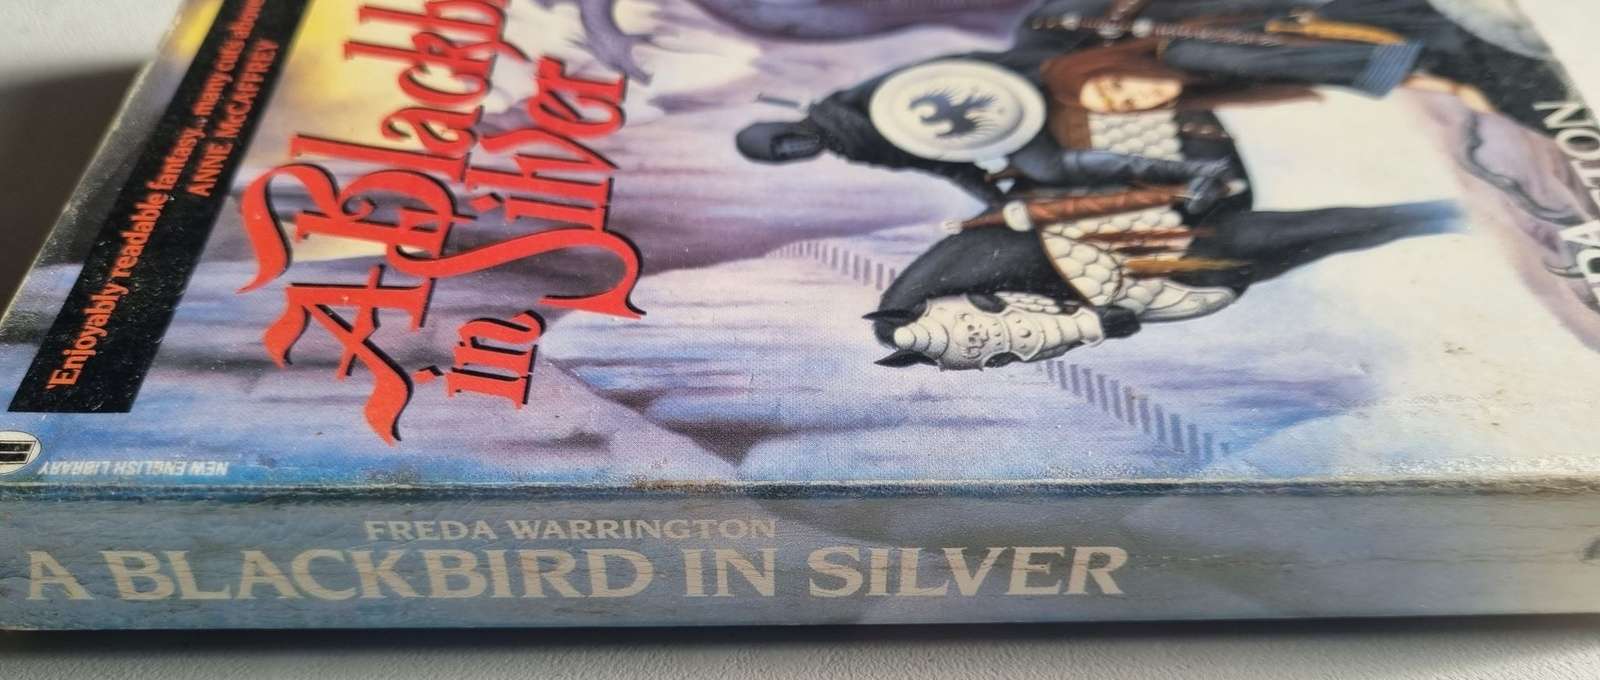 A Blackbird in Silver - Freda Warrington